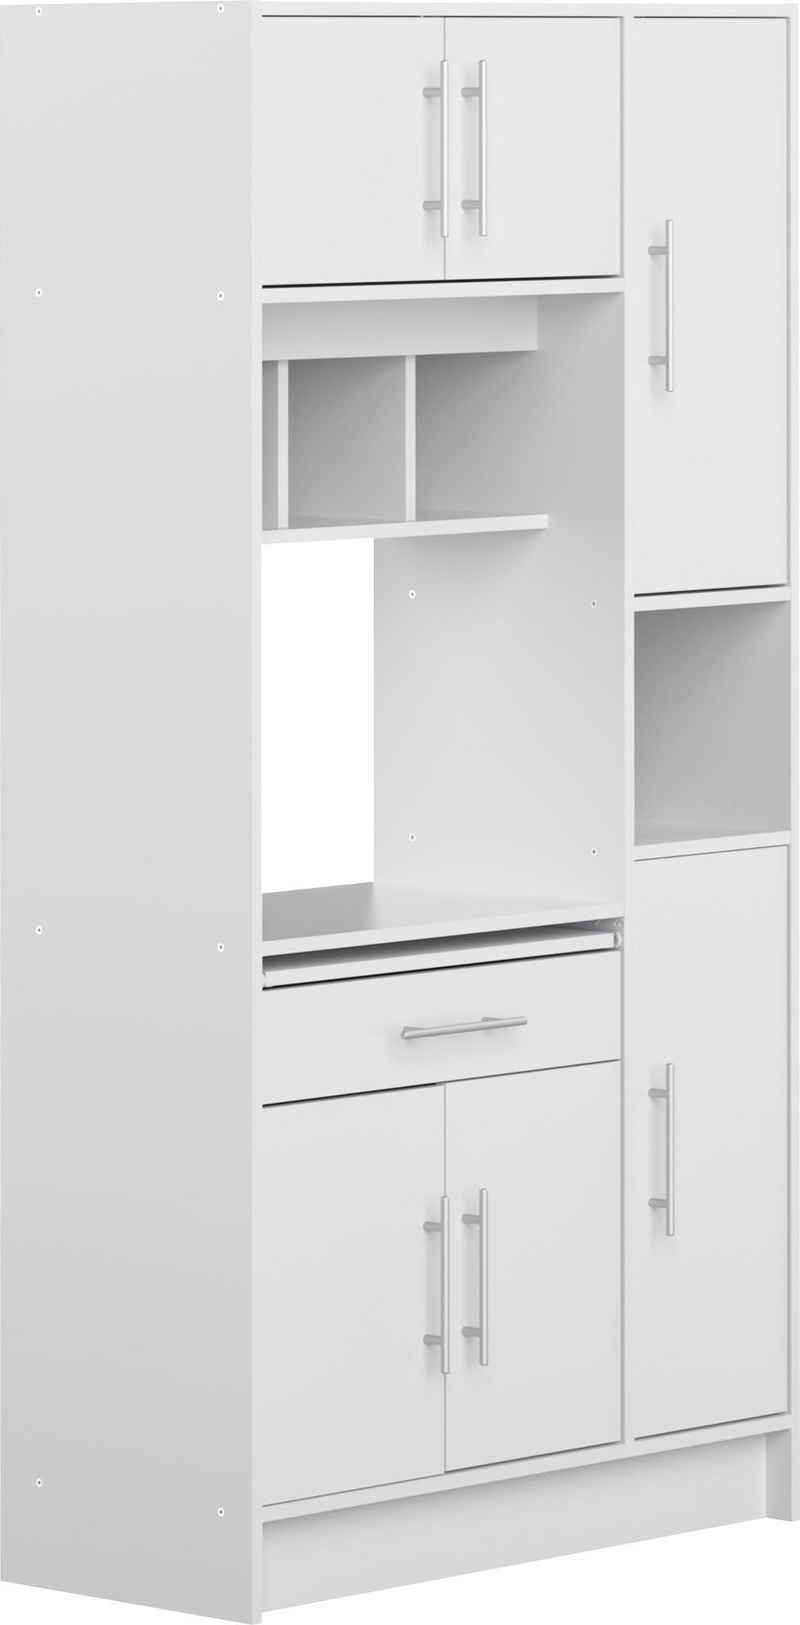 TemaHome Küchenbuffet »Louise« ausziehbarer Schrank, mit Fach für eine Mikrowelle und vielen Fächern, Höhe 180 cm